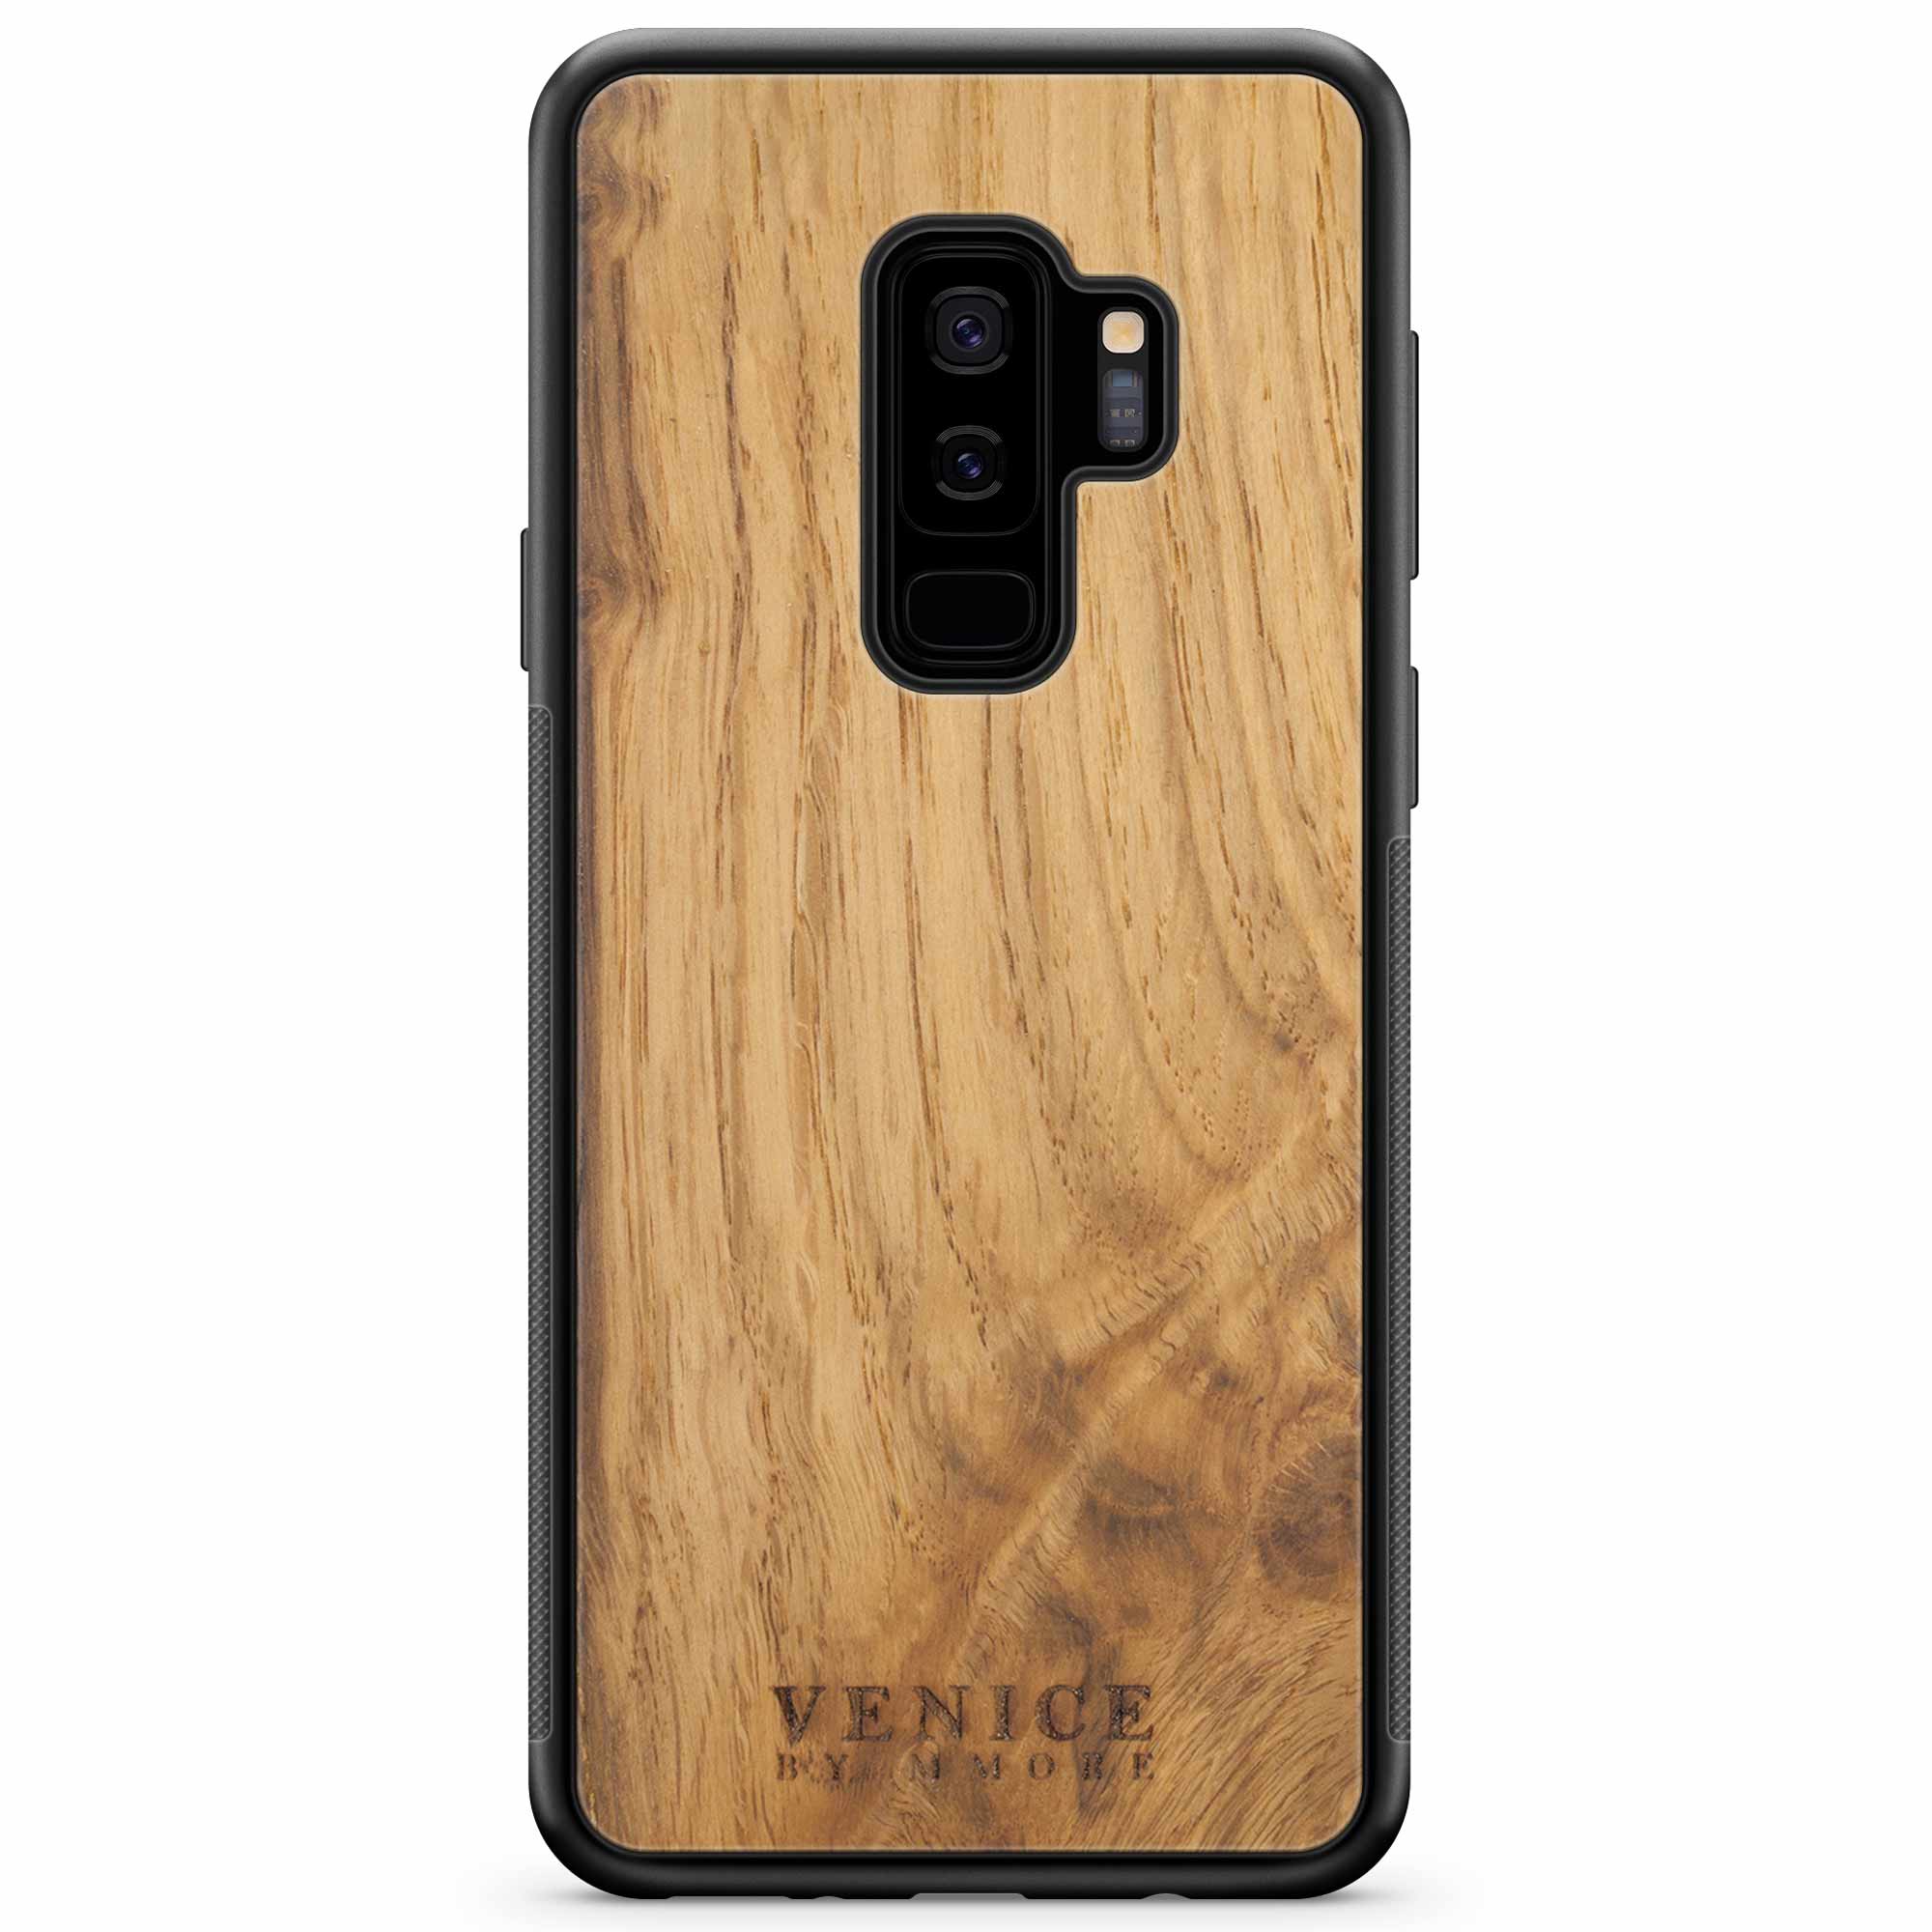 Custodia in legno per Samsung S9 Plus con scritta Venezia